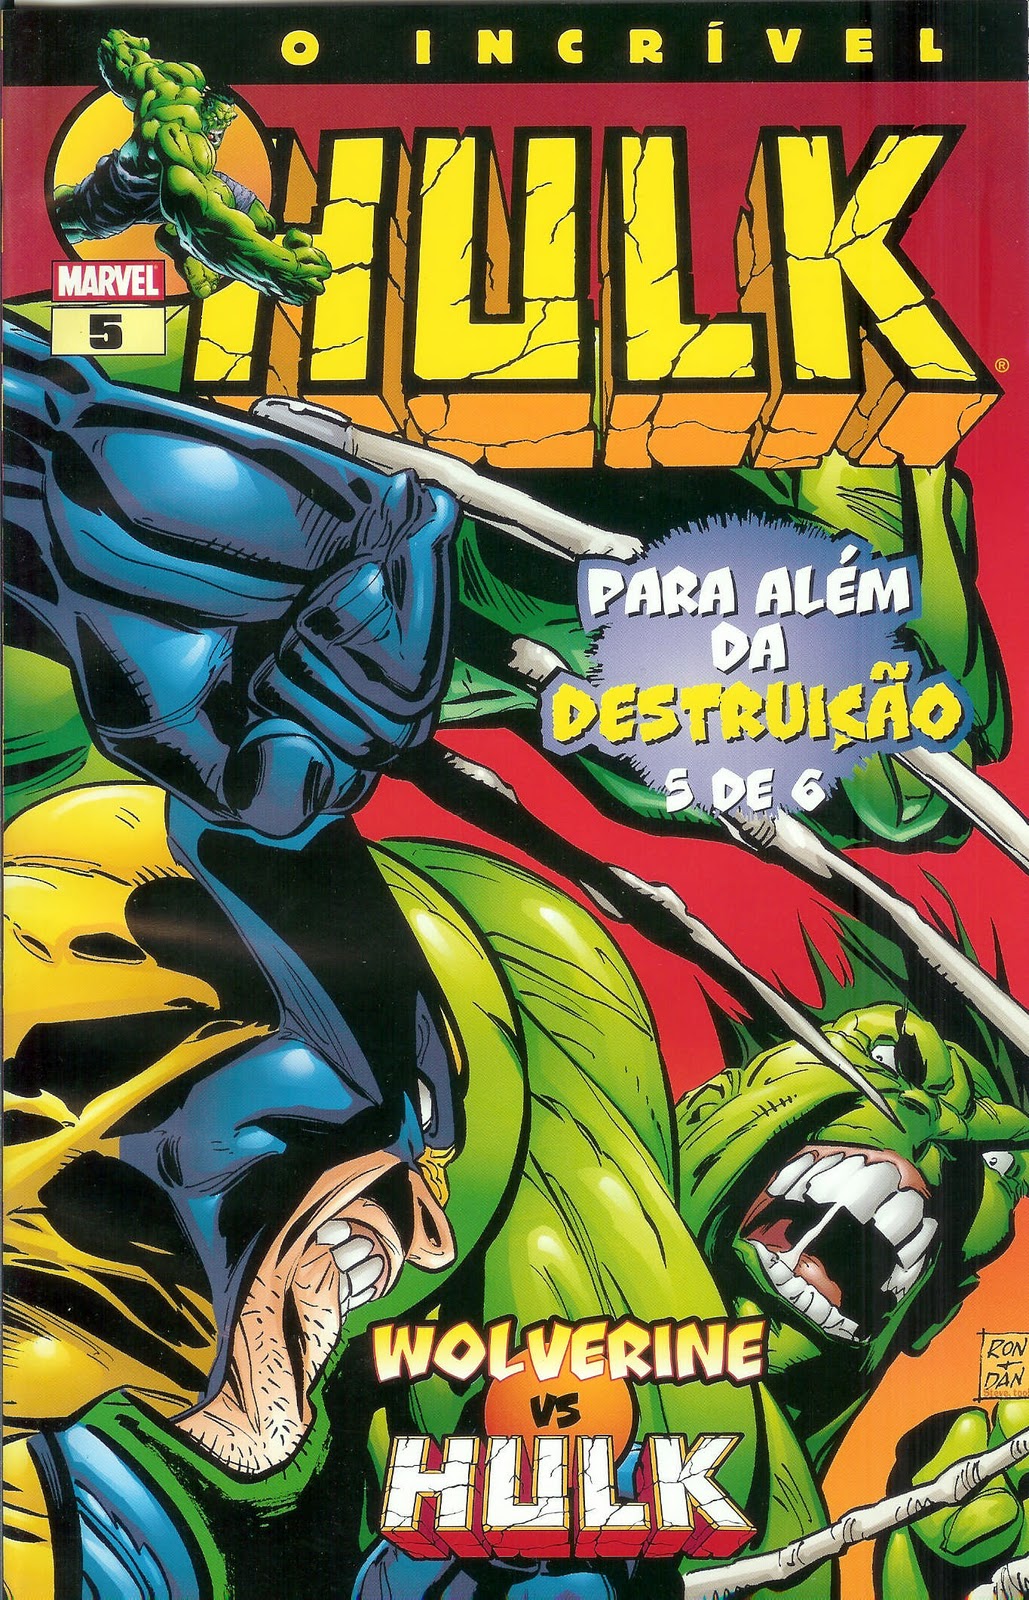 COMICS O Incrível Hulk Nr. 5 – Wolverine Vs Hulk / Para Além da Destruição 5 von 6 – USADO